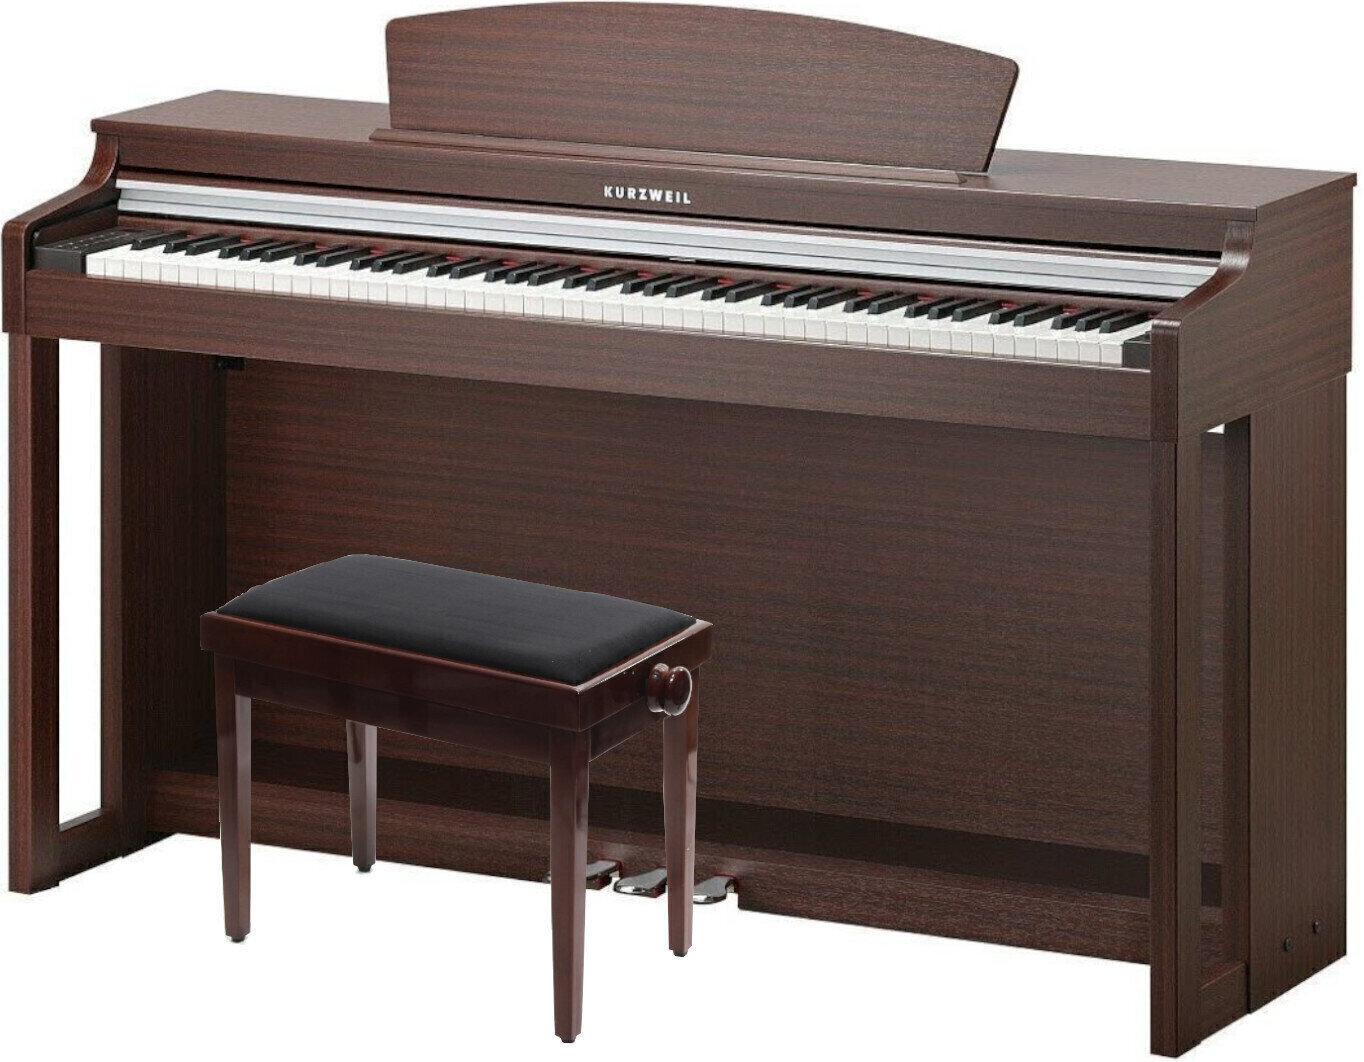 Digitale piano Kurzweil MP120-SM